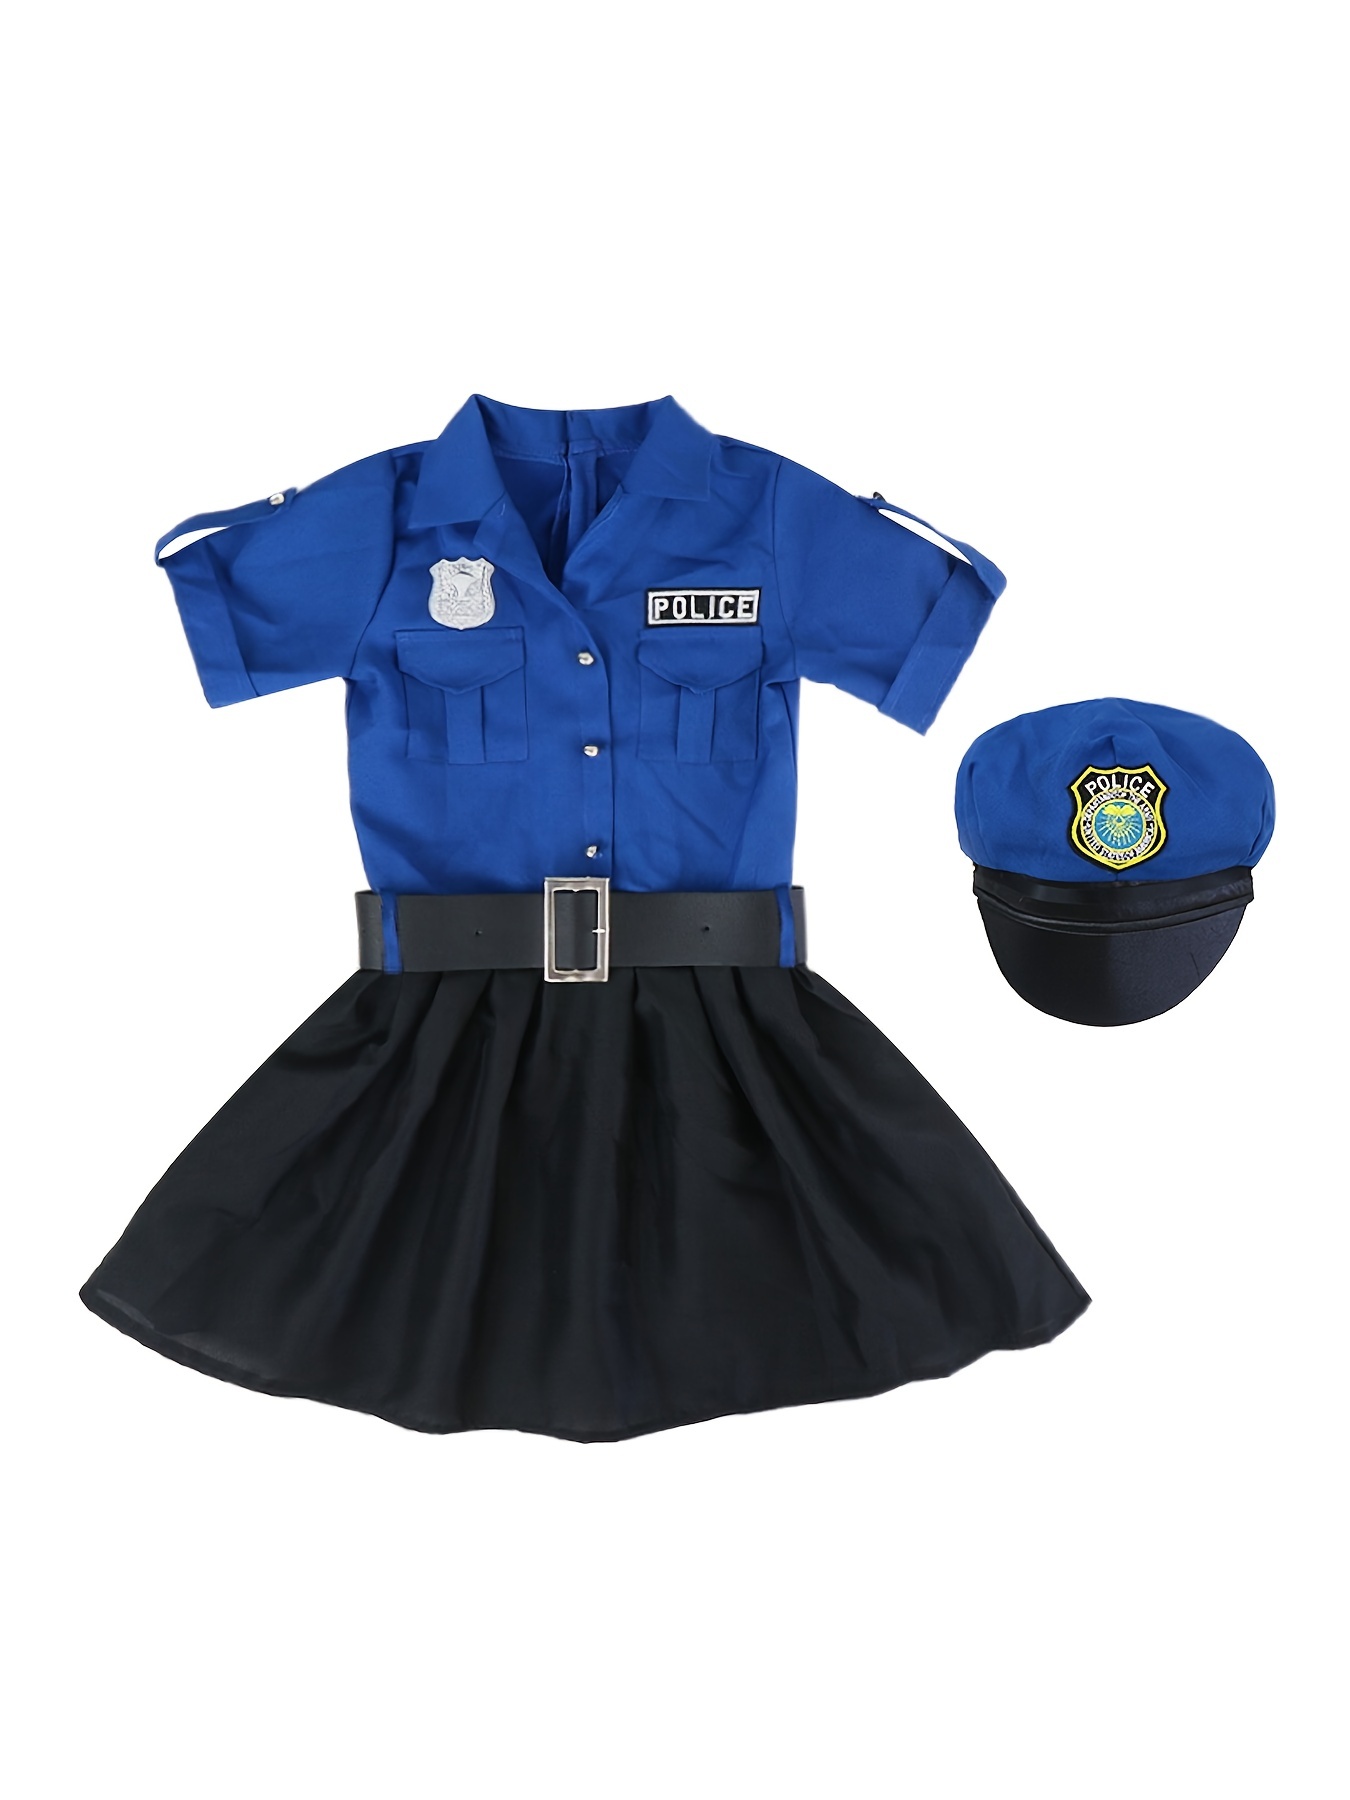 Las mejores ofertas en Disfraces de uniforme de policía para Niños